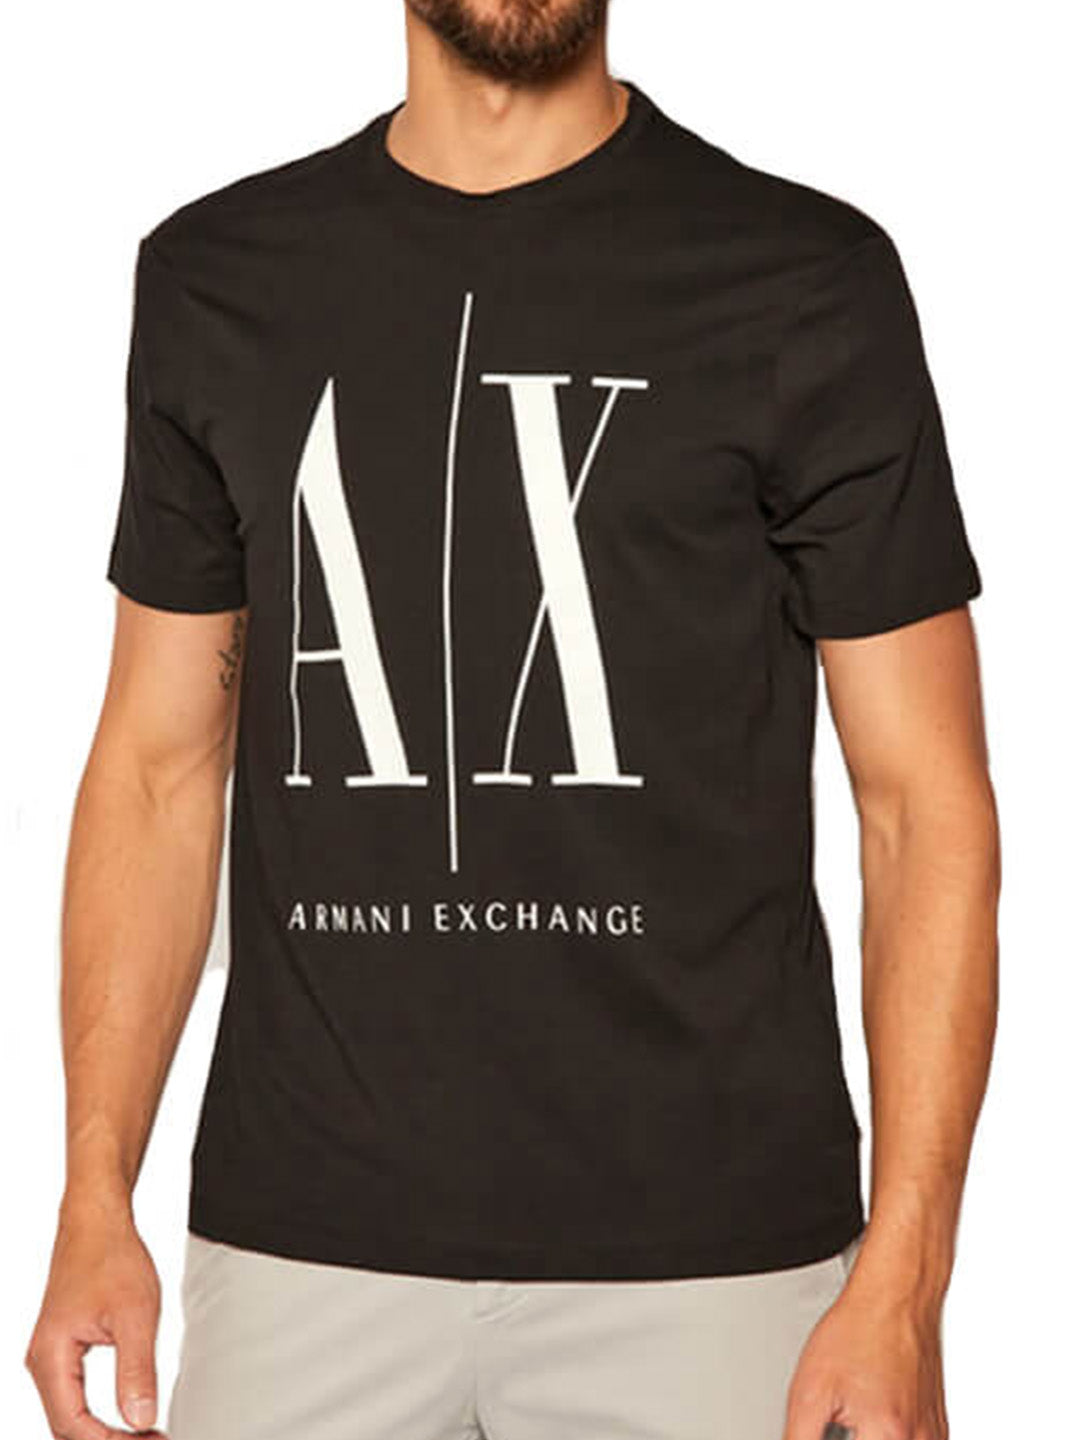 ARMANI EXCHANGE black/white cotton T-shirt